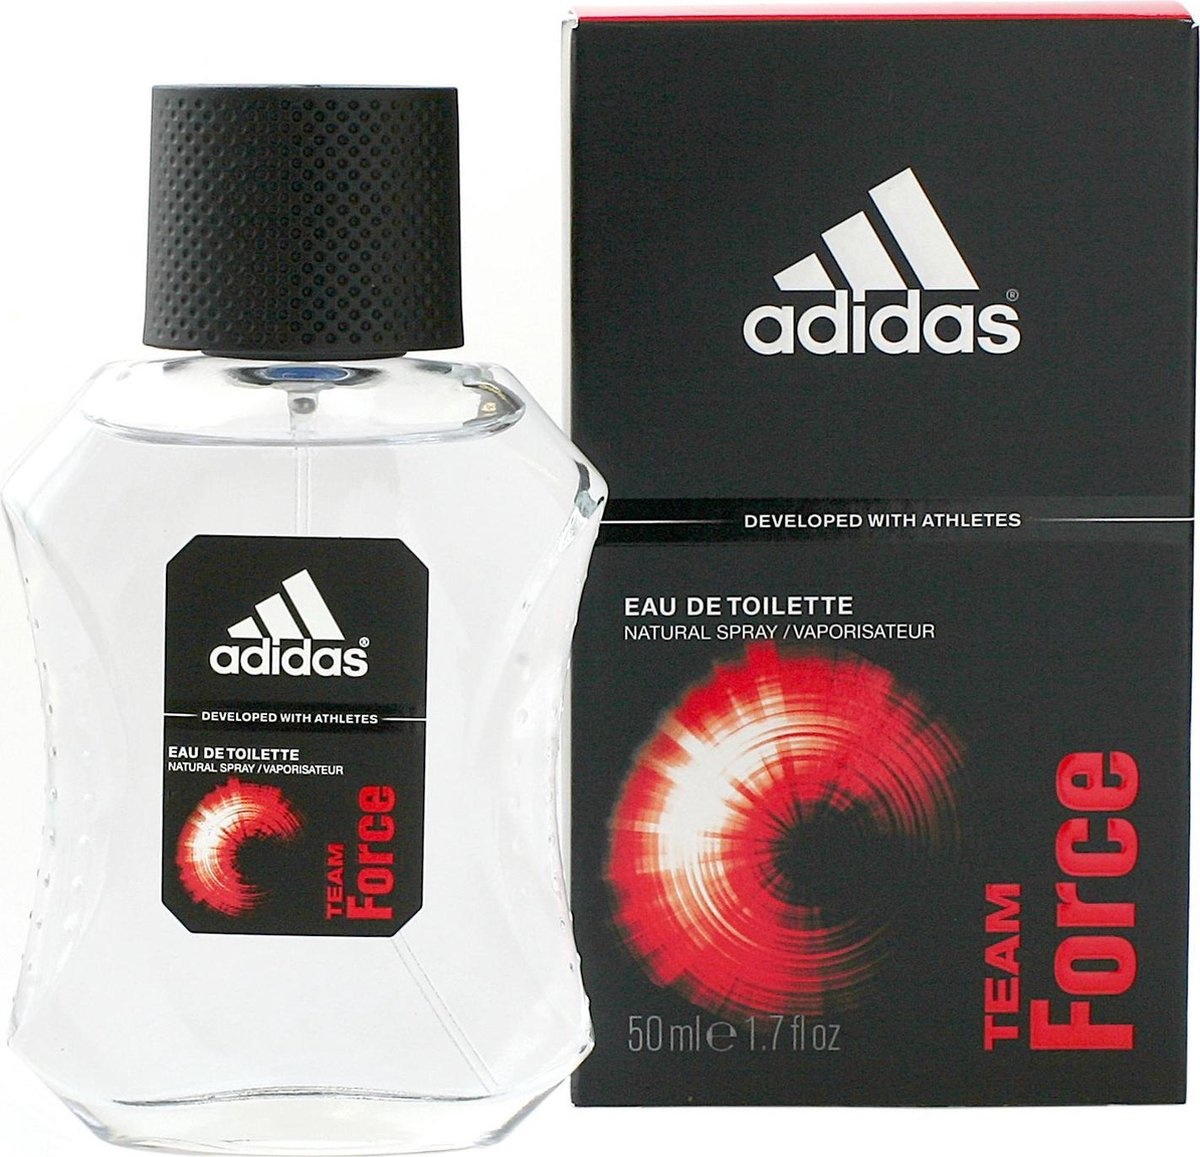 Adidas Team Force for Men - 50 ml - Eau de toilette - Verpakking beschadigd